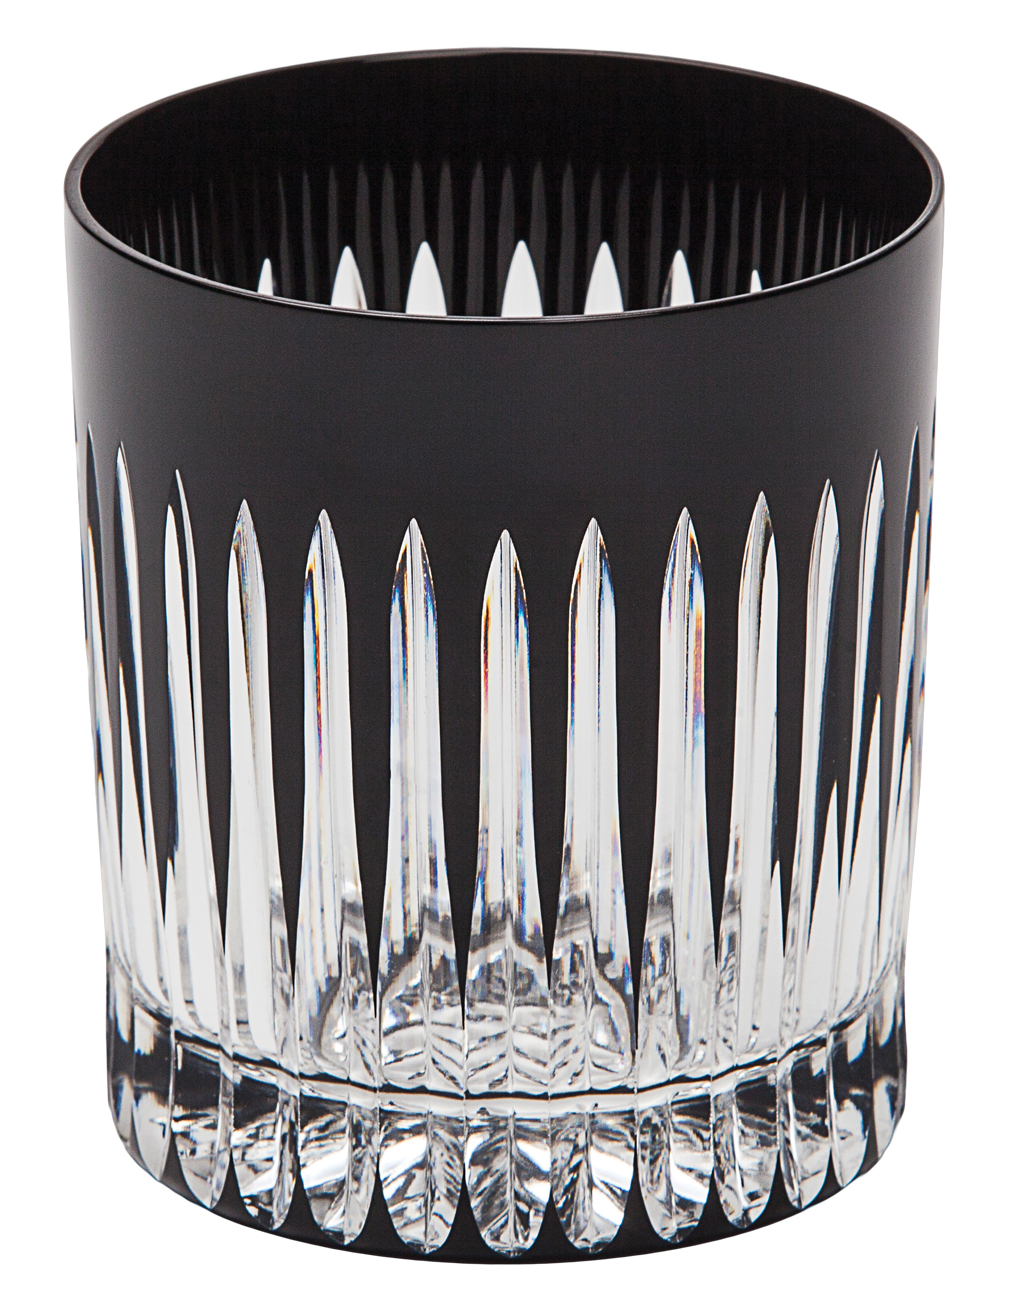 Cristal de Paris Timeless noir goblets, $265 set of six, from The Artworks.